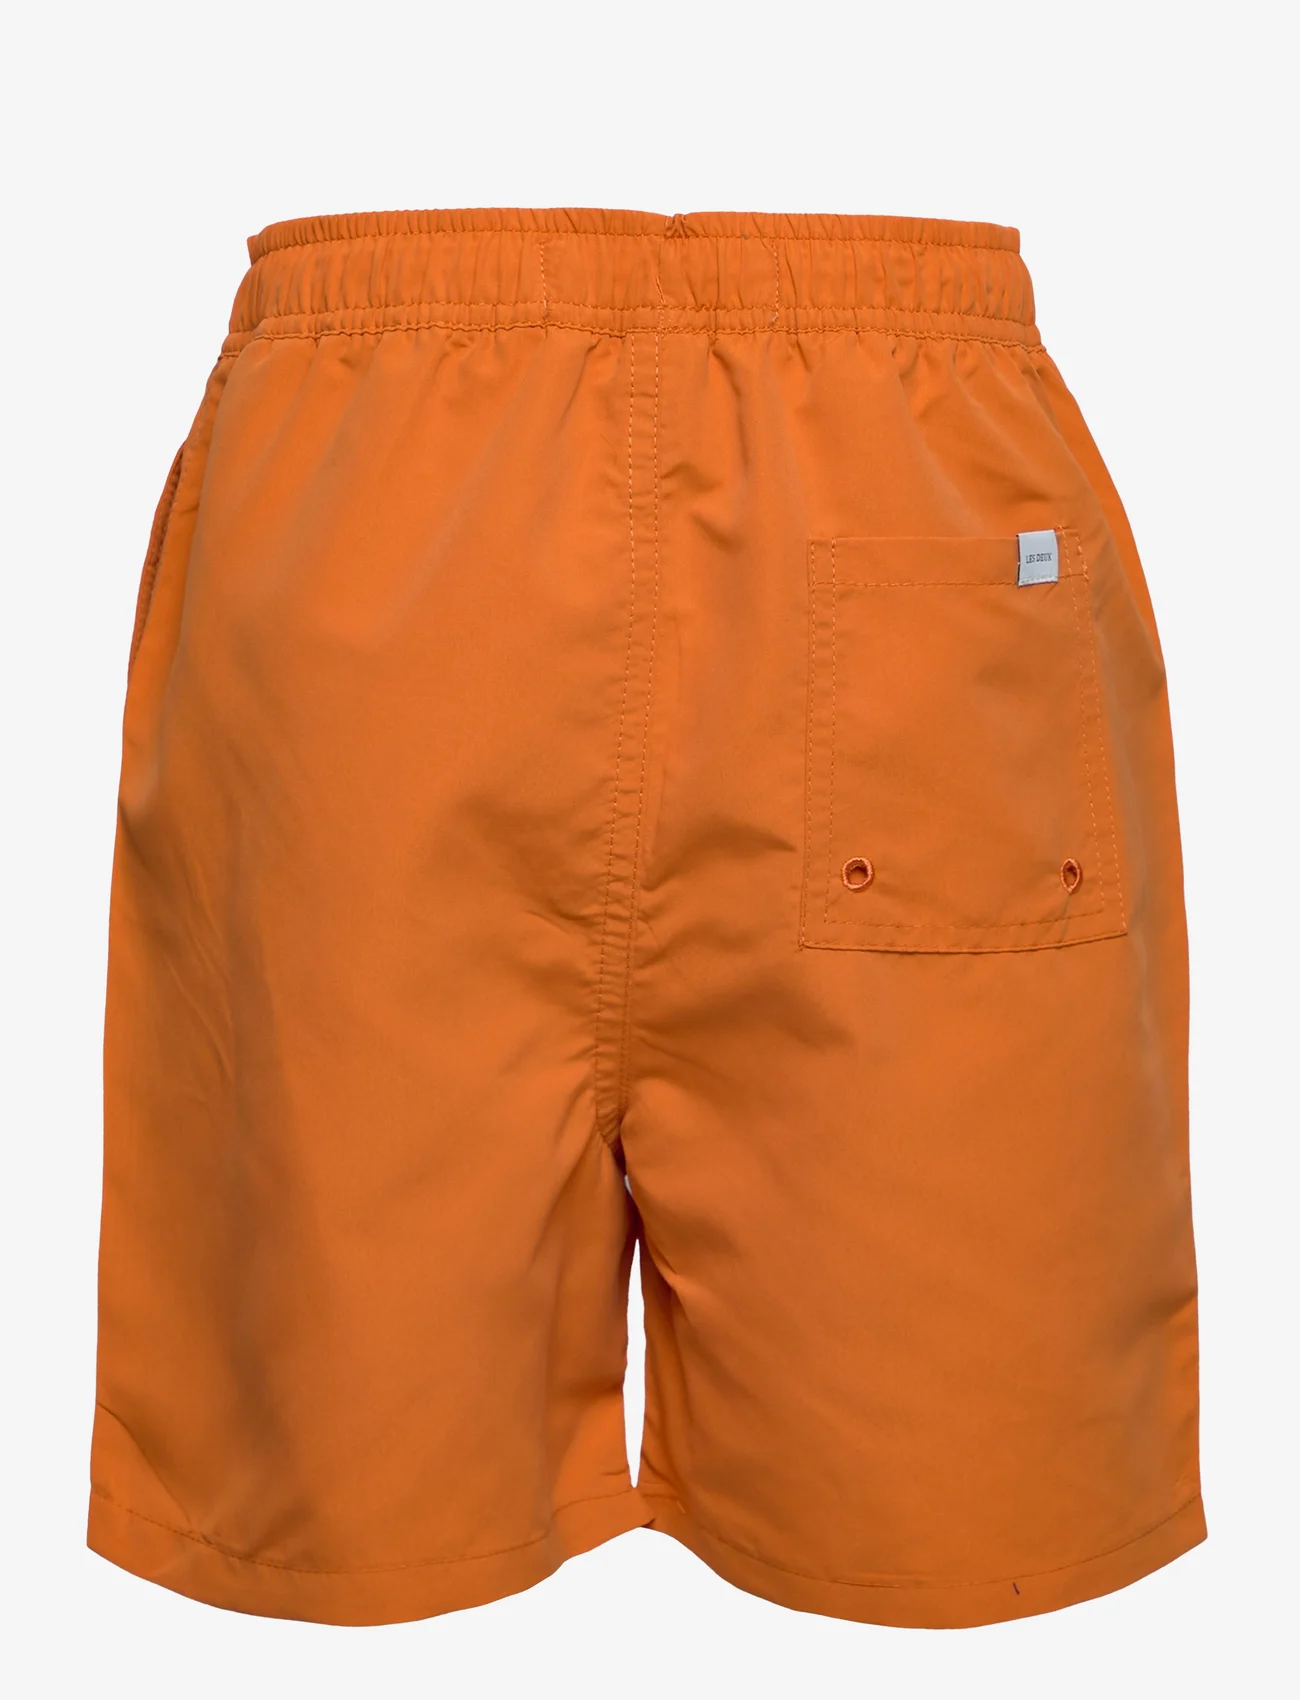 Les Deux - Les Deux Logo Swim Shorts Kids - dusty orange/ivory - 1